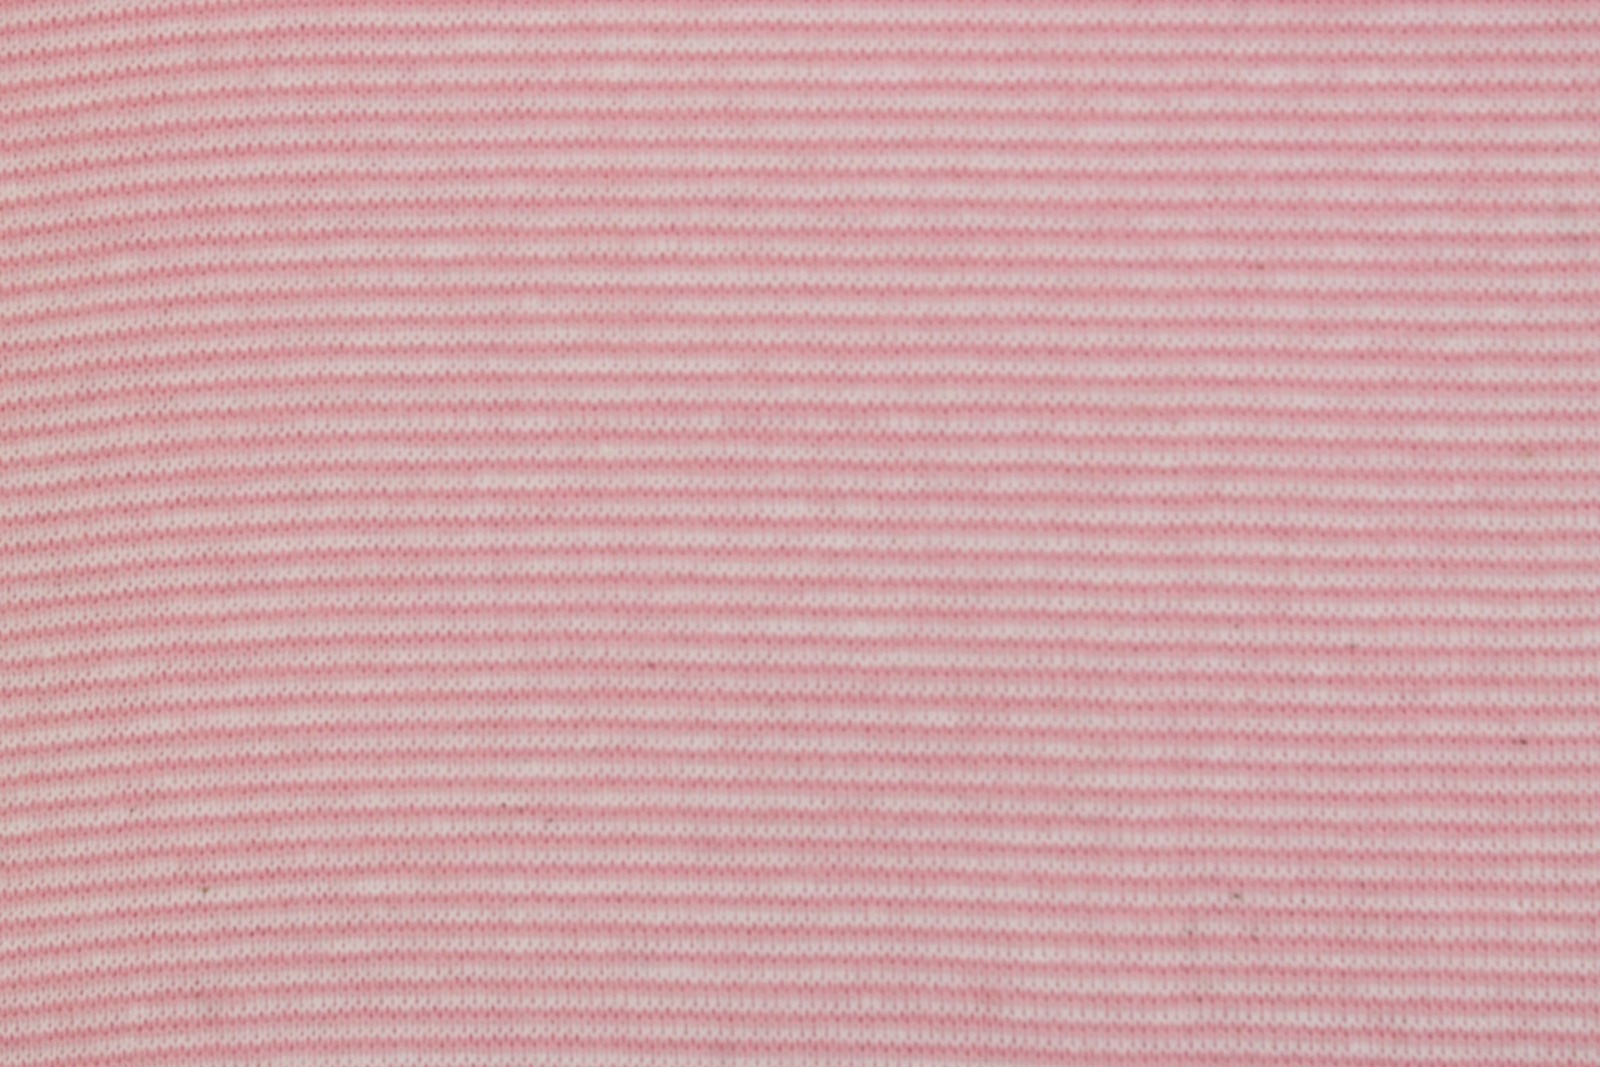 05m Ringelbündchen Bündchen glatt Streifen rosa weiß 2